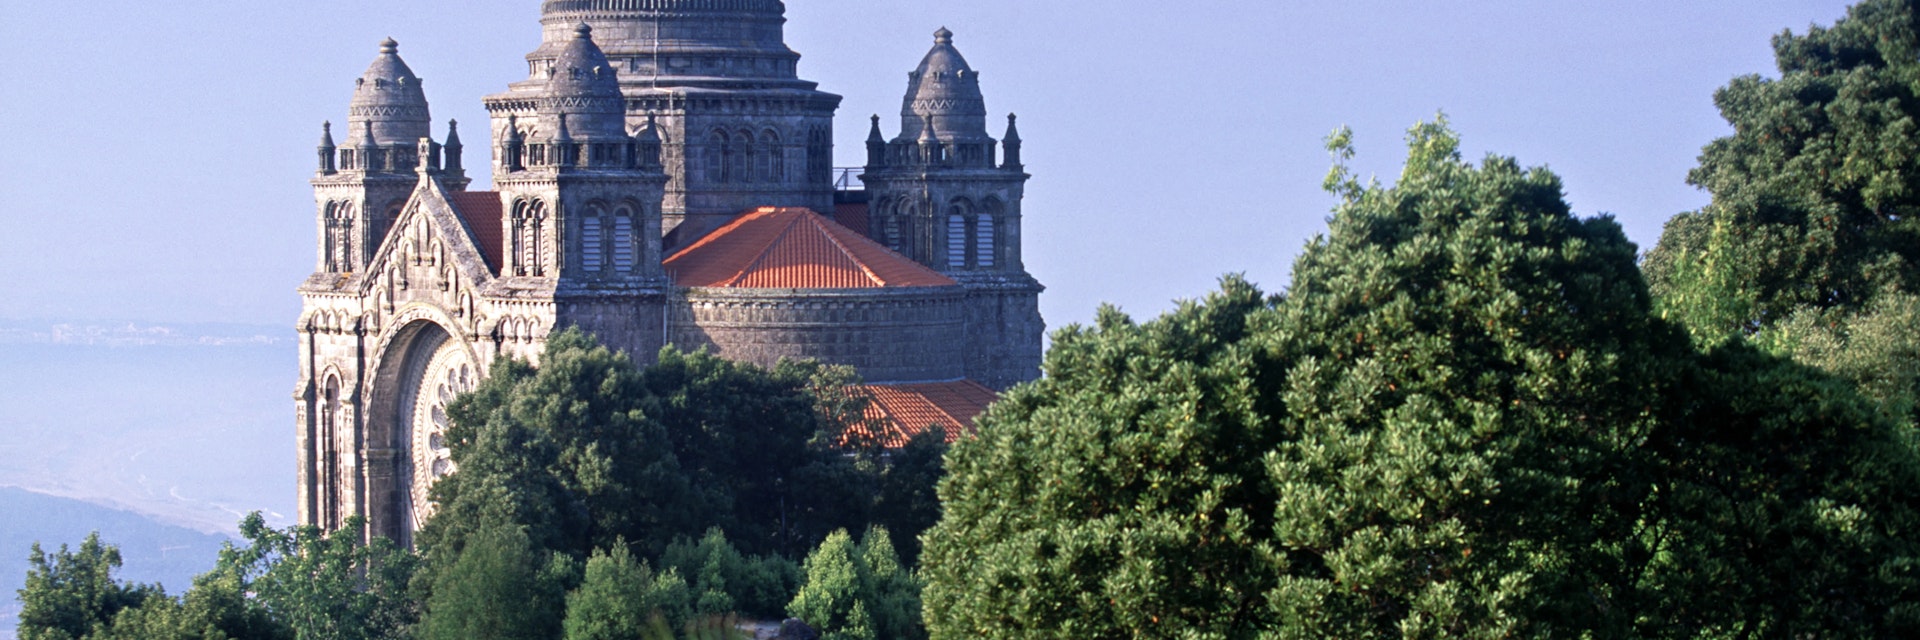 Santa Luzia Church , Viana do Castelo, Portugal